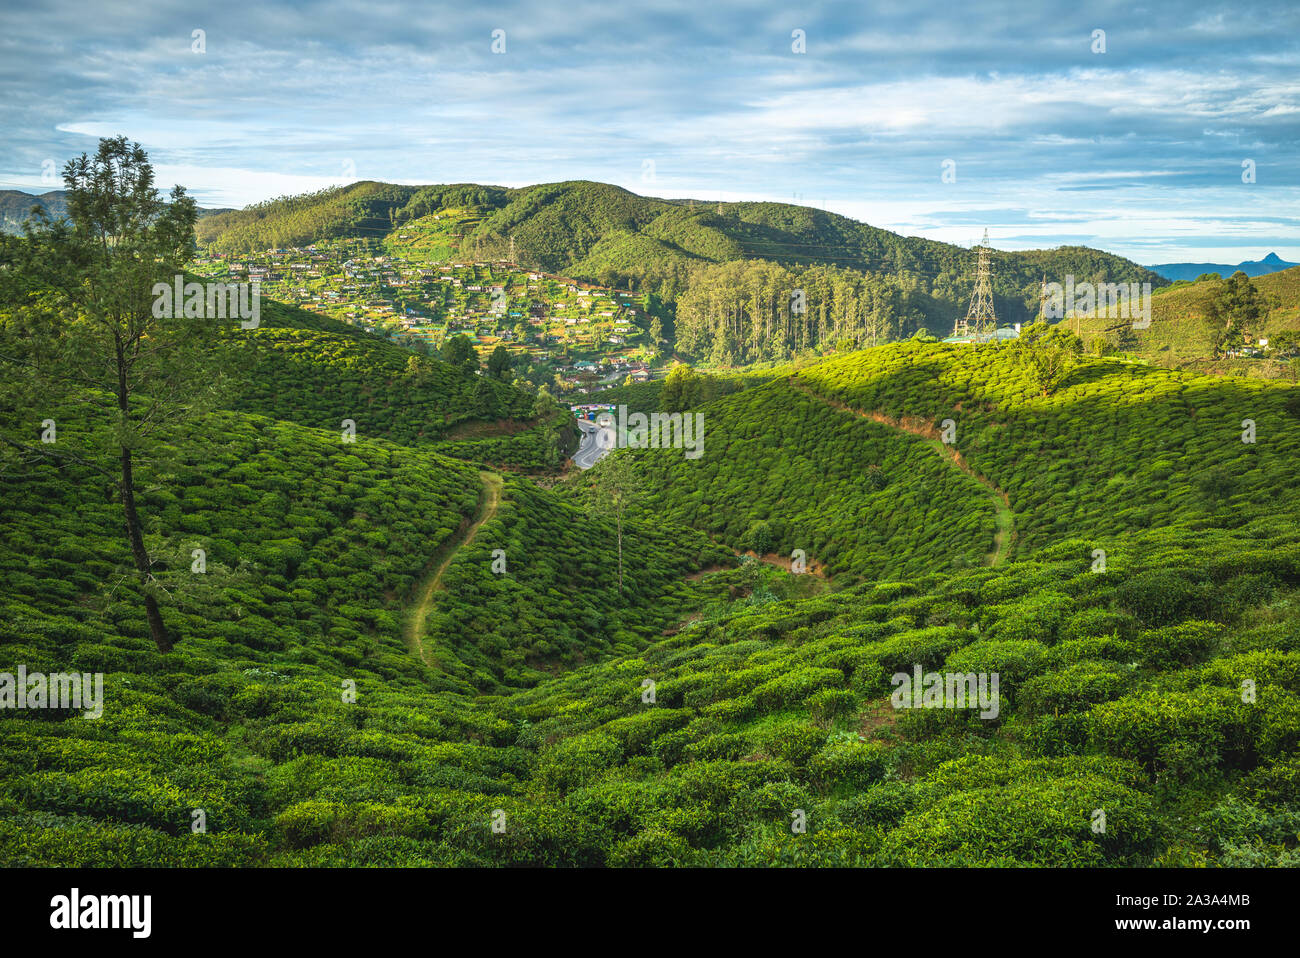 scenery of tea garden at sri lanka Stock Photo